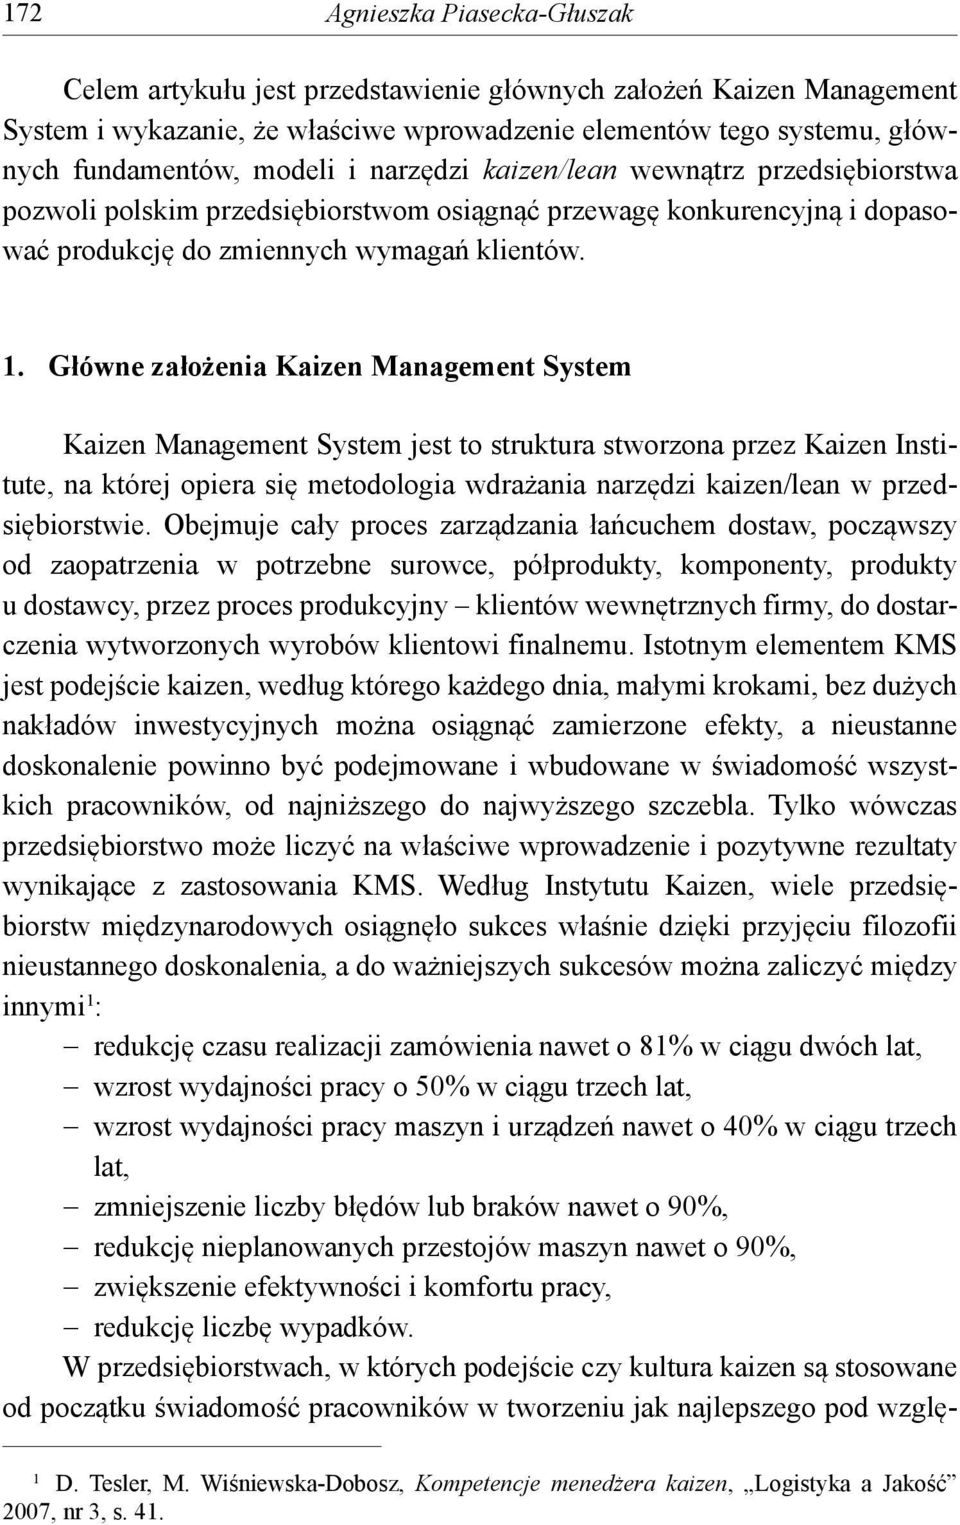 Główne założenia Kaizen Management System Kaizen Management System jest to struktura stworzona przez Kaizen Institute, na której opiera się metodologia wdrażania narzędzi kaizen/lean w